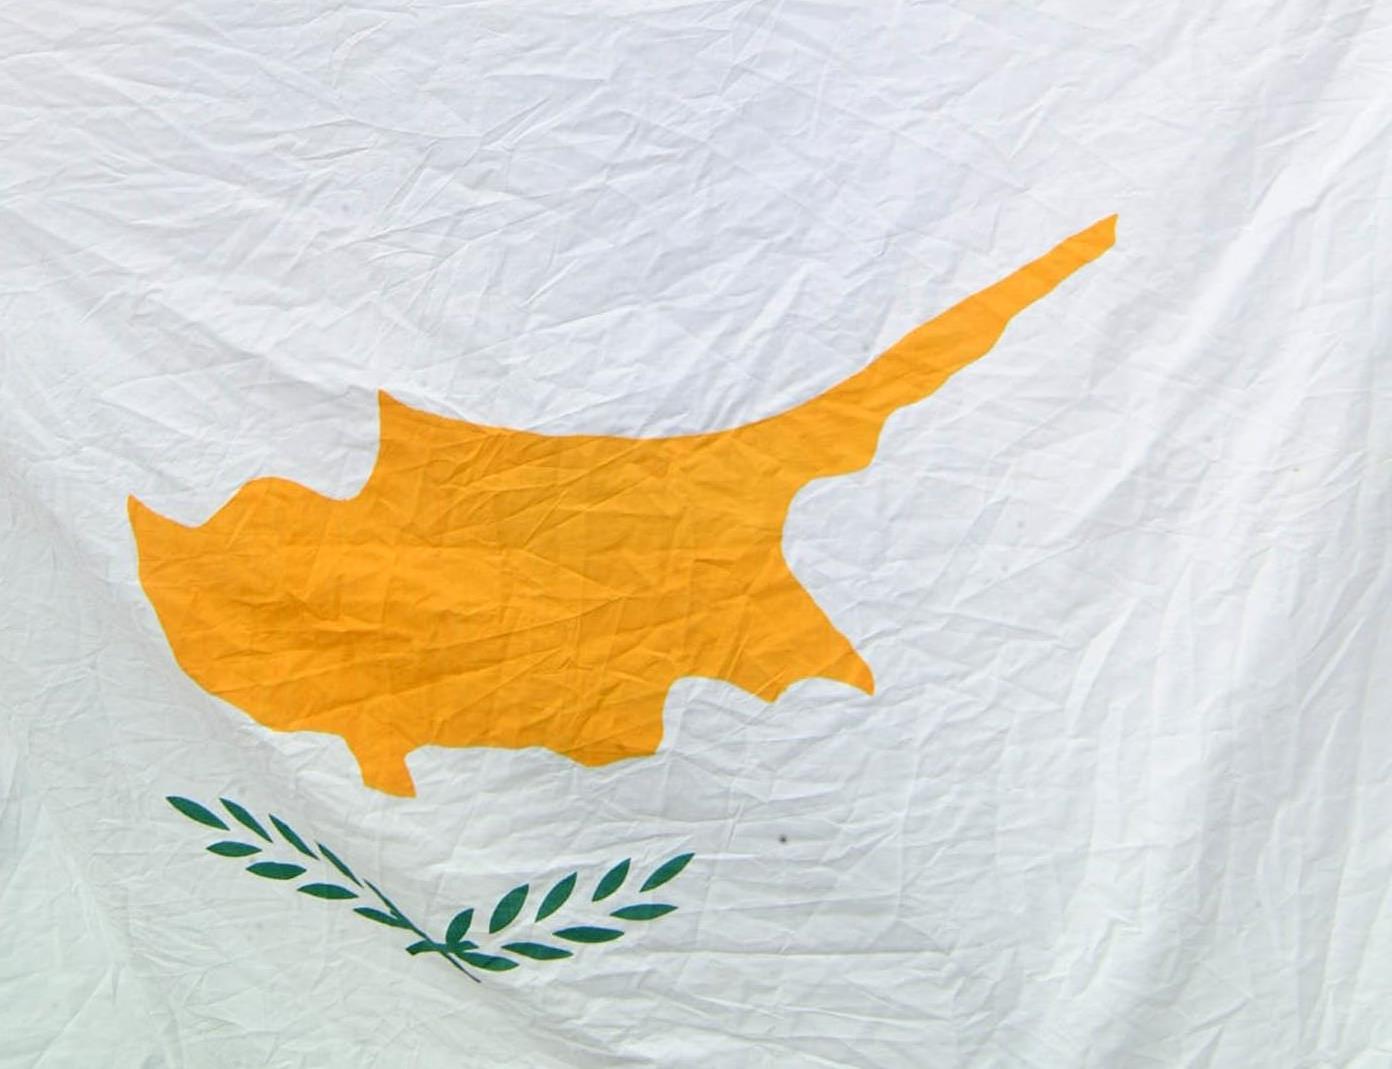 Κύπρος: Πώς λειτούργησε ως πύλη εισόδου στην ΕΕ για Ρώσους ολιγάρχες